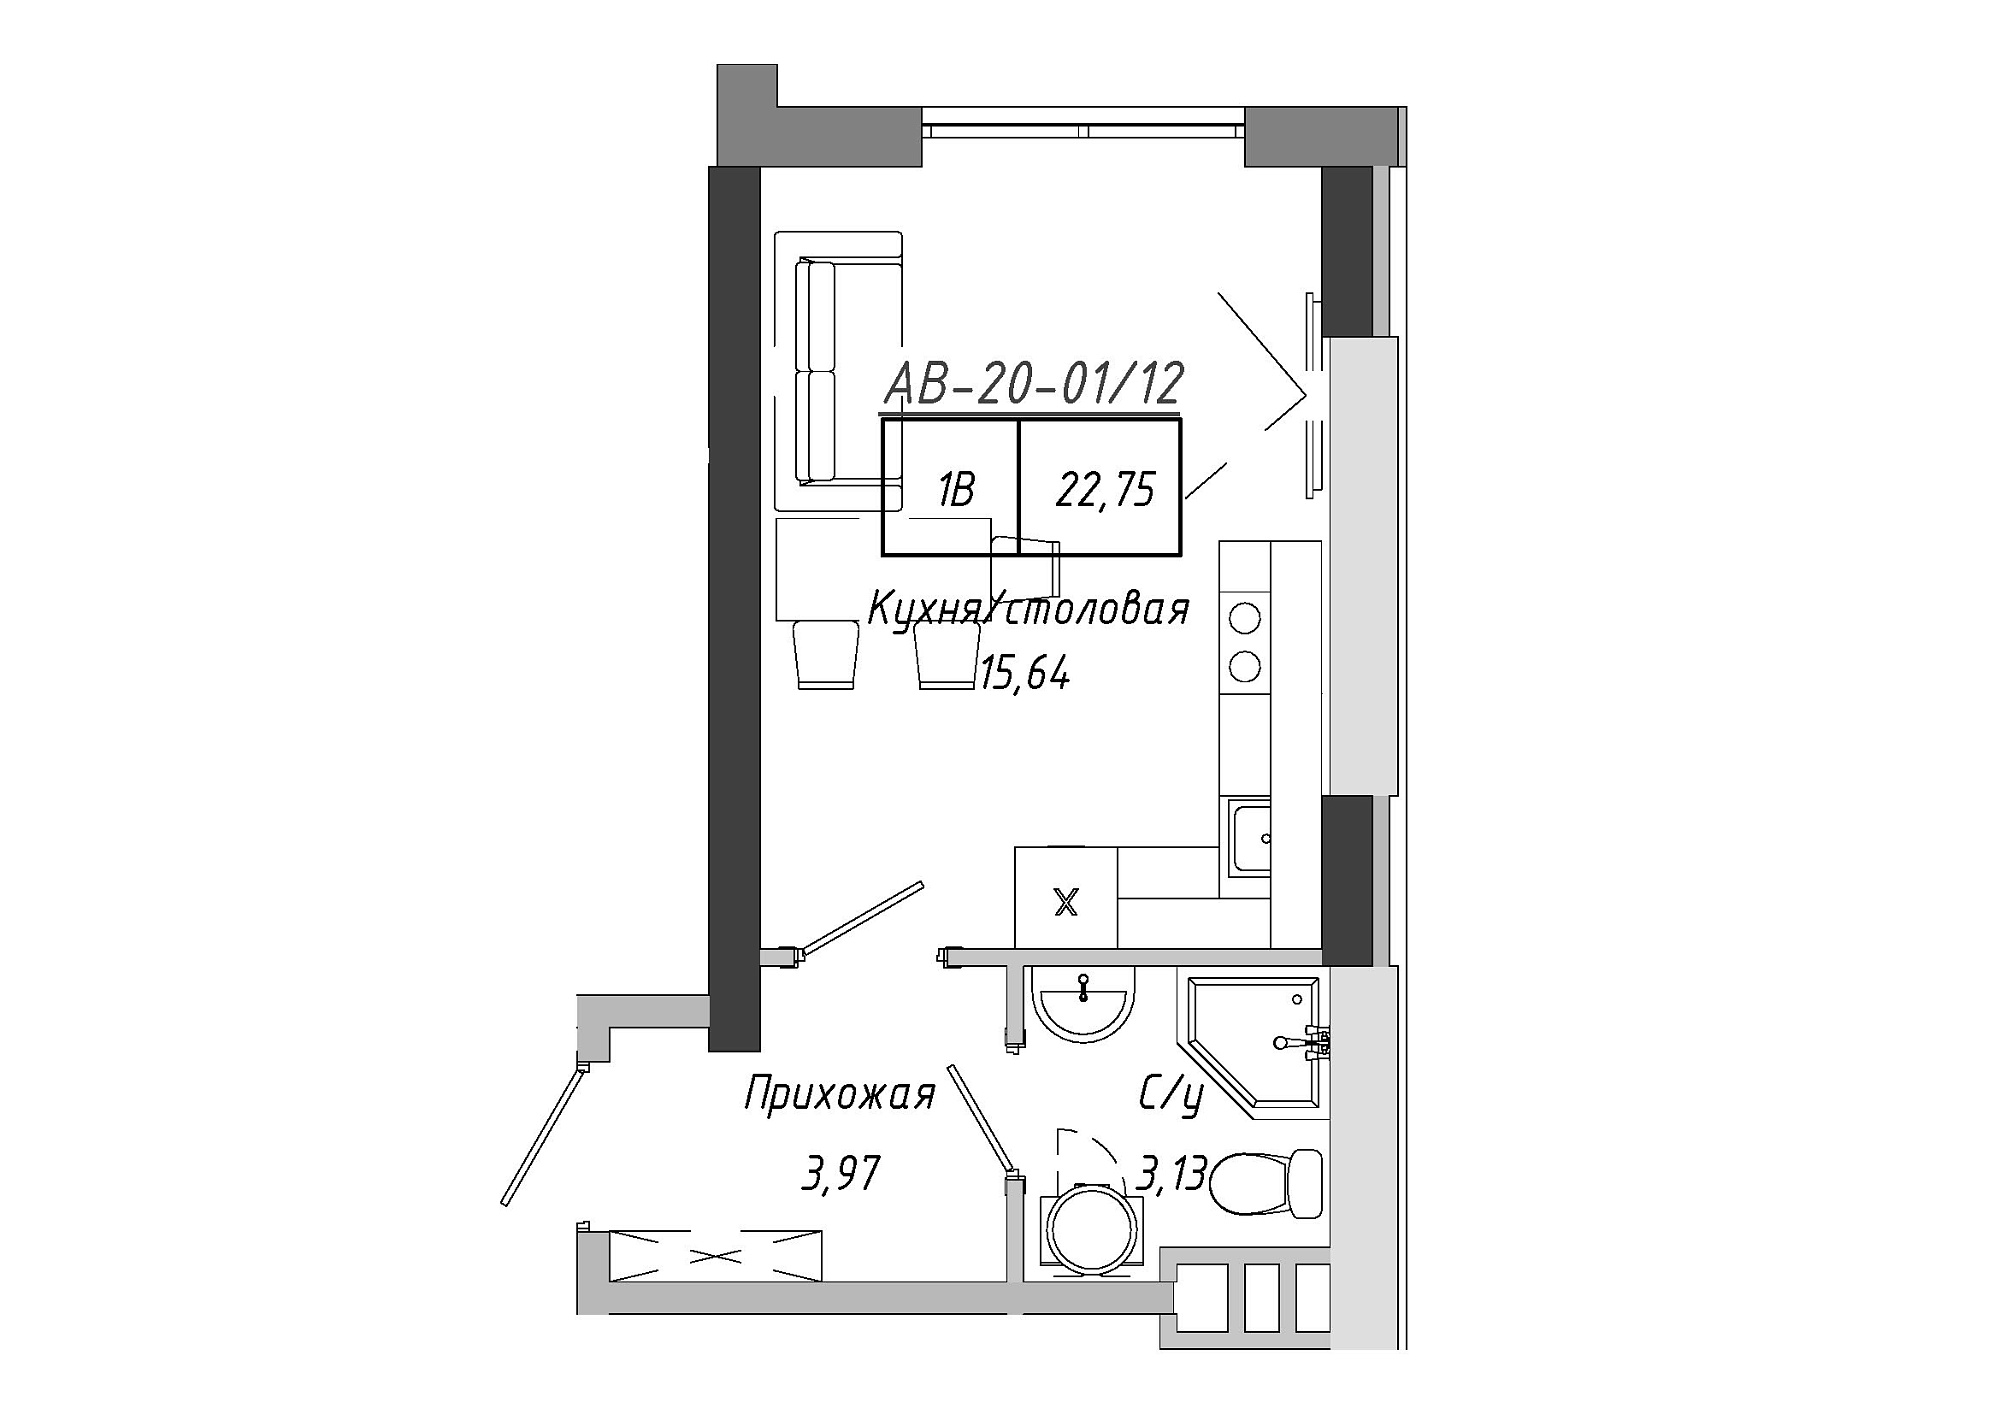 Планування Smart-квартира площею 22.75м2, AB-20-01/00012.